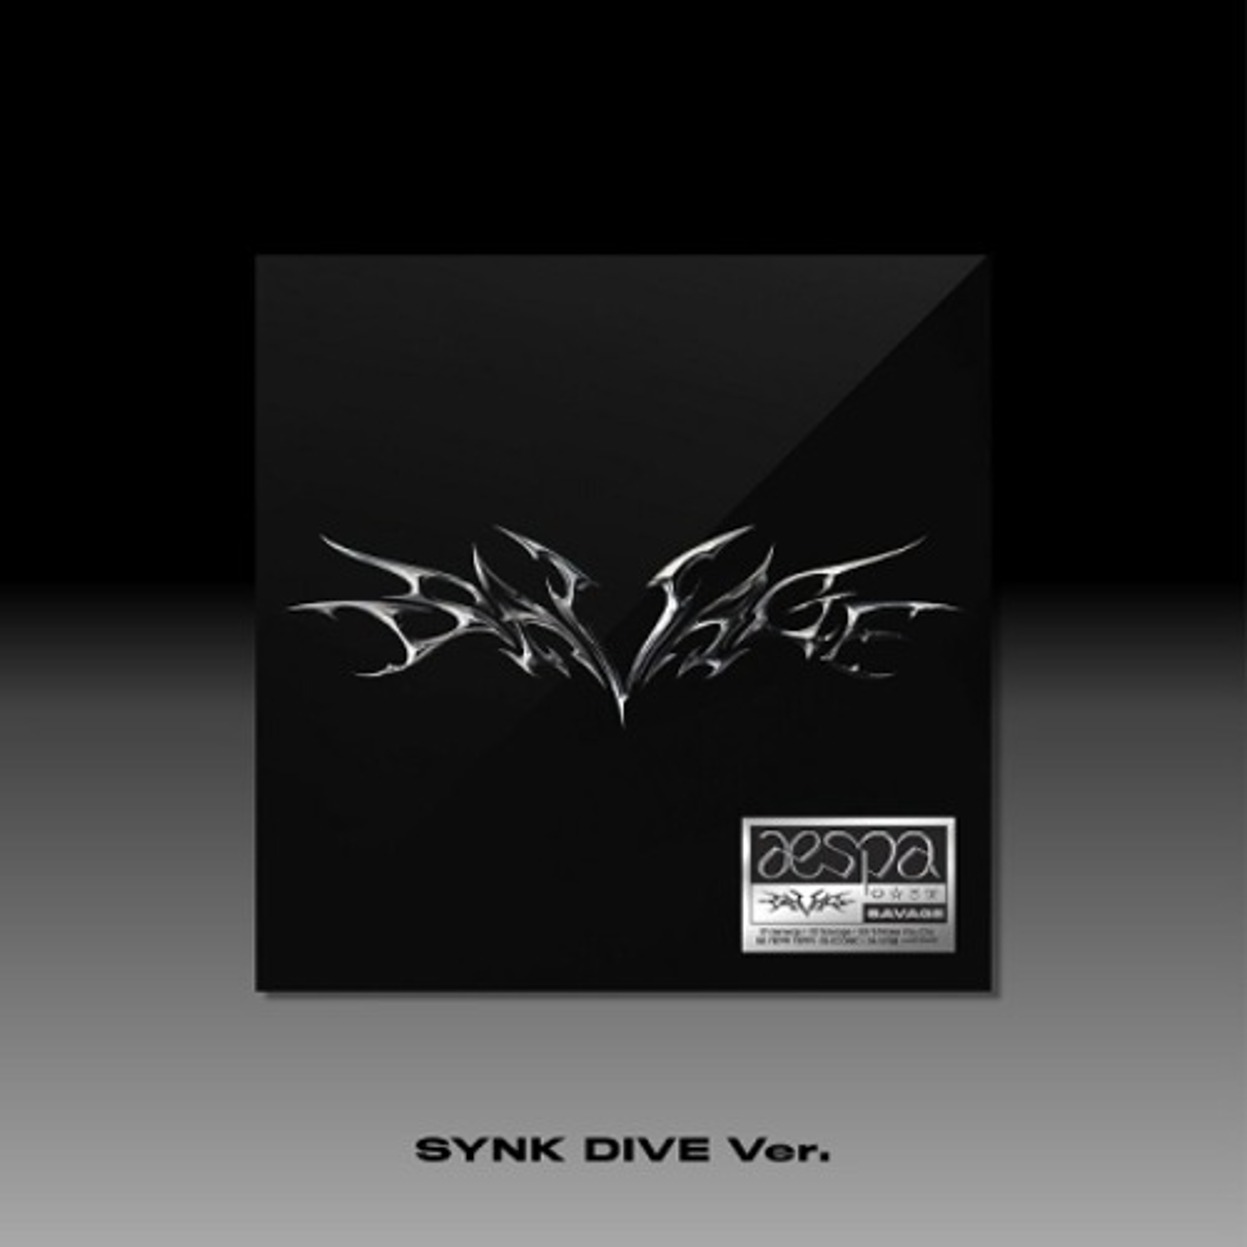 에스파 (aespa) - 미니앨범 1집 [Savage] (SYNK DIVE 버전)